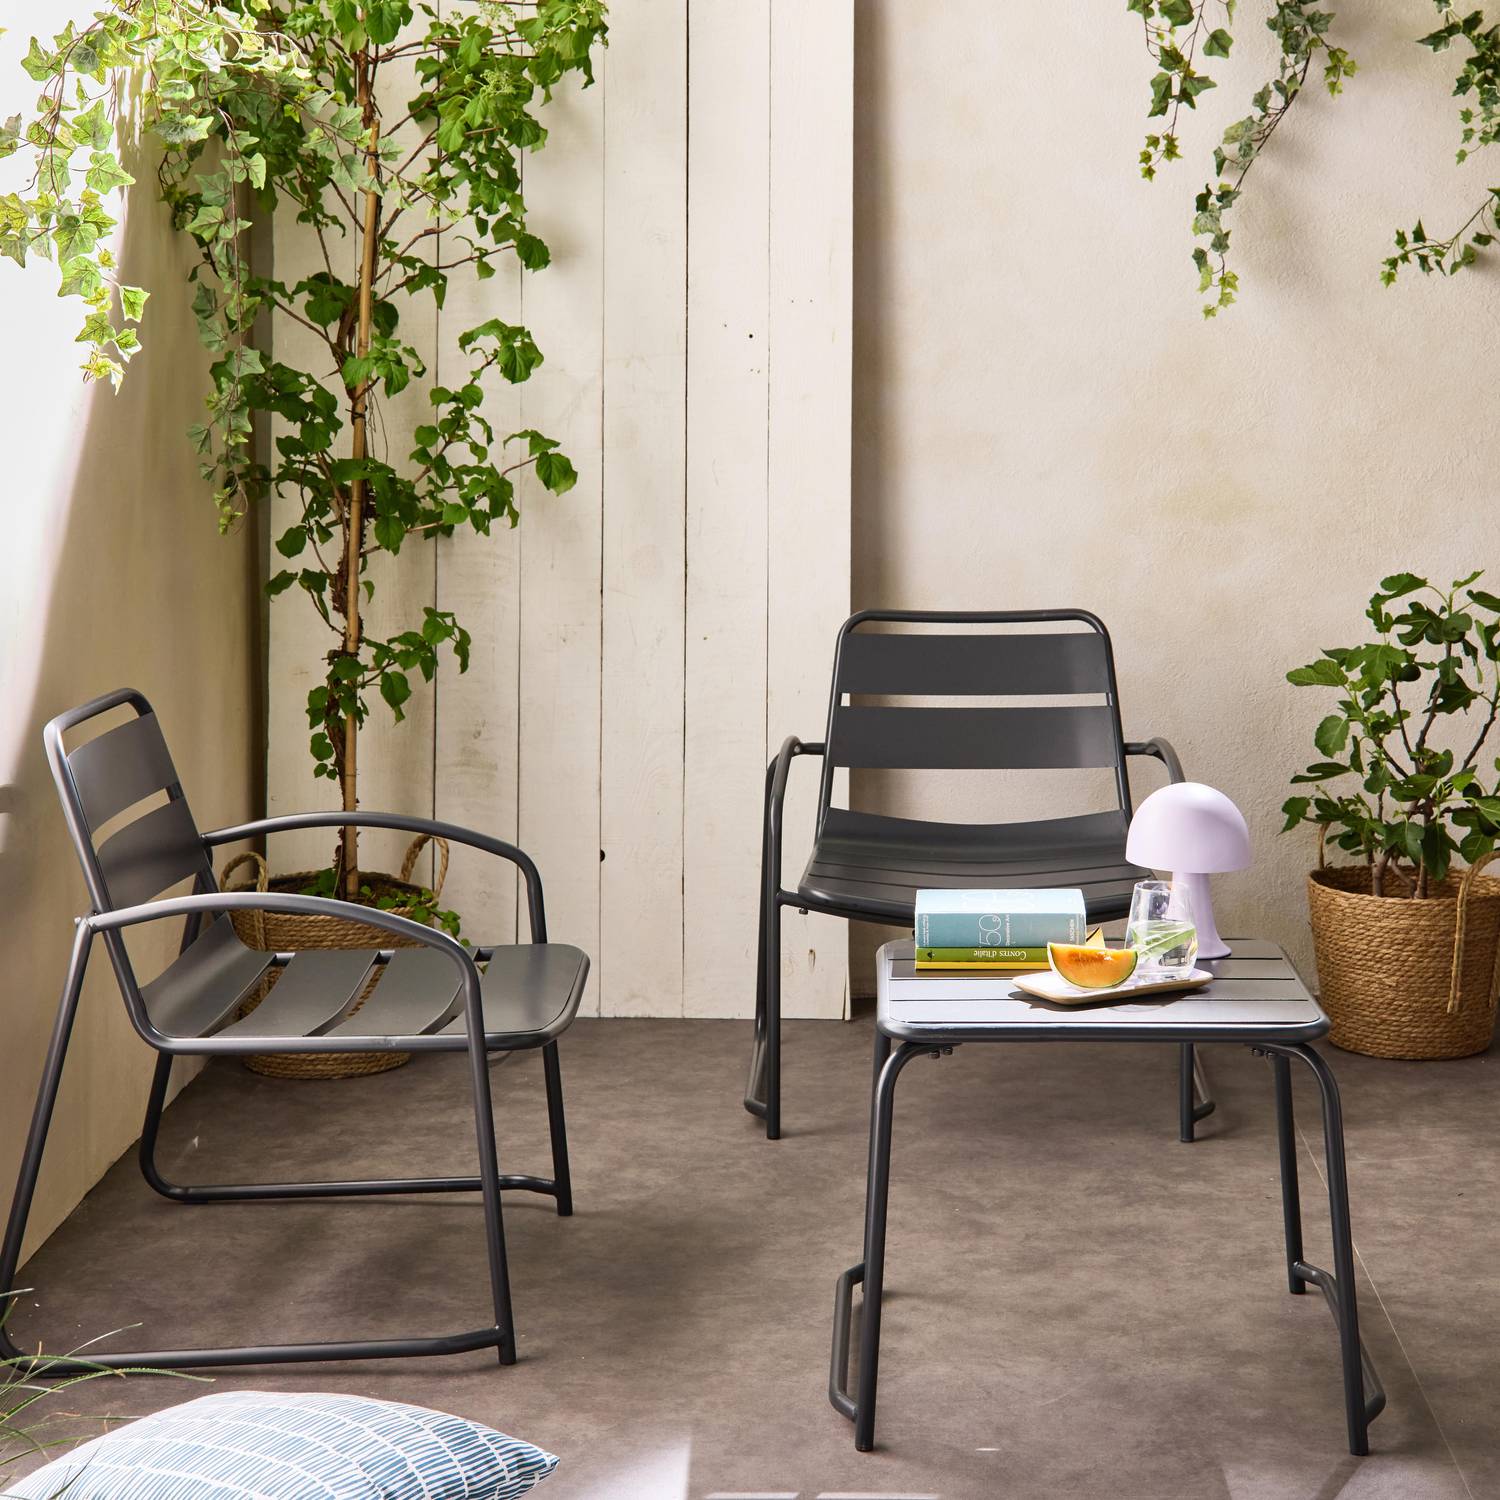 Metall-Gartenset 2 Personen- anthrazit, 2 Stühle 1 Beistelltisch aus Stahl - Suzana Photo2